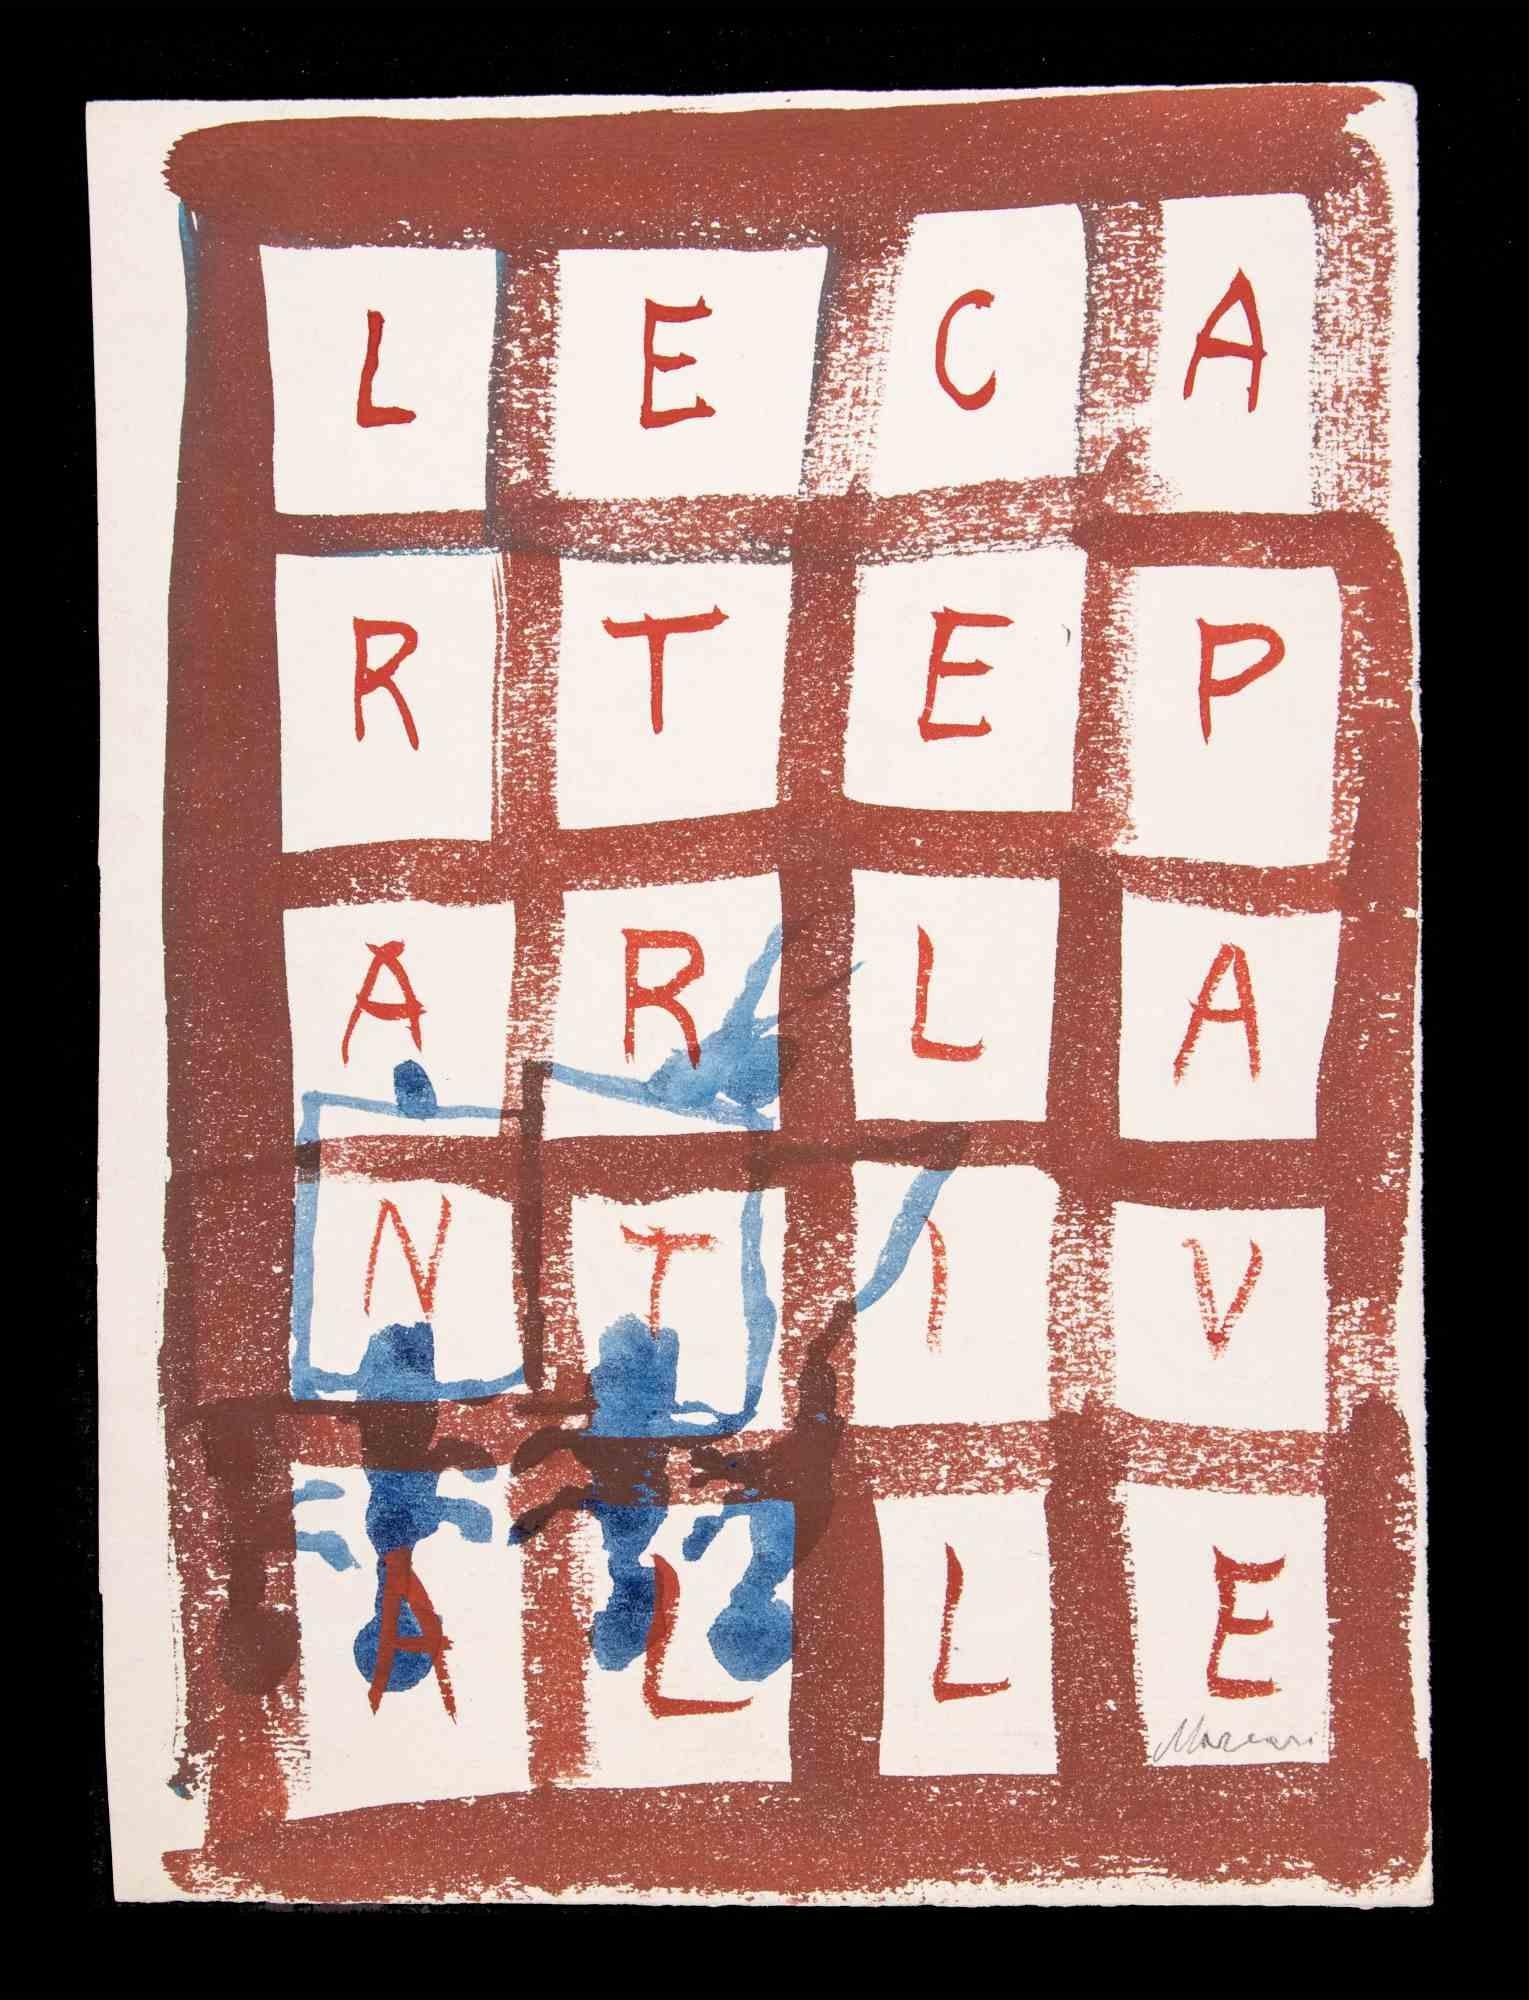 Die sprechenden Karden ist eine Aquarellzeichnung von Mino Maccari  (1924-1989) in den 1948er Jahren.

Handsigniert am unteren Rand.

Guter Zustand auf wenig Papier.

Mino Maccari (Siena, 1924-Rom, 16. Juni 1989) war ein italienischer